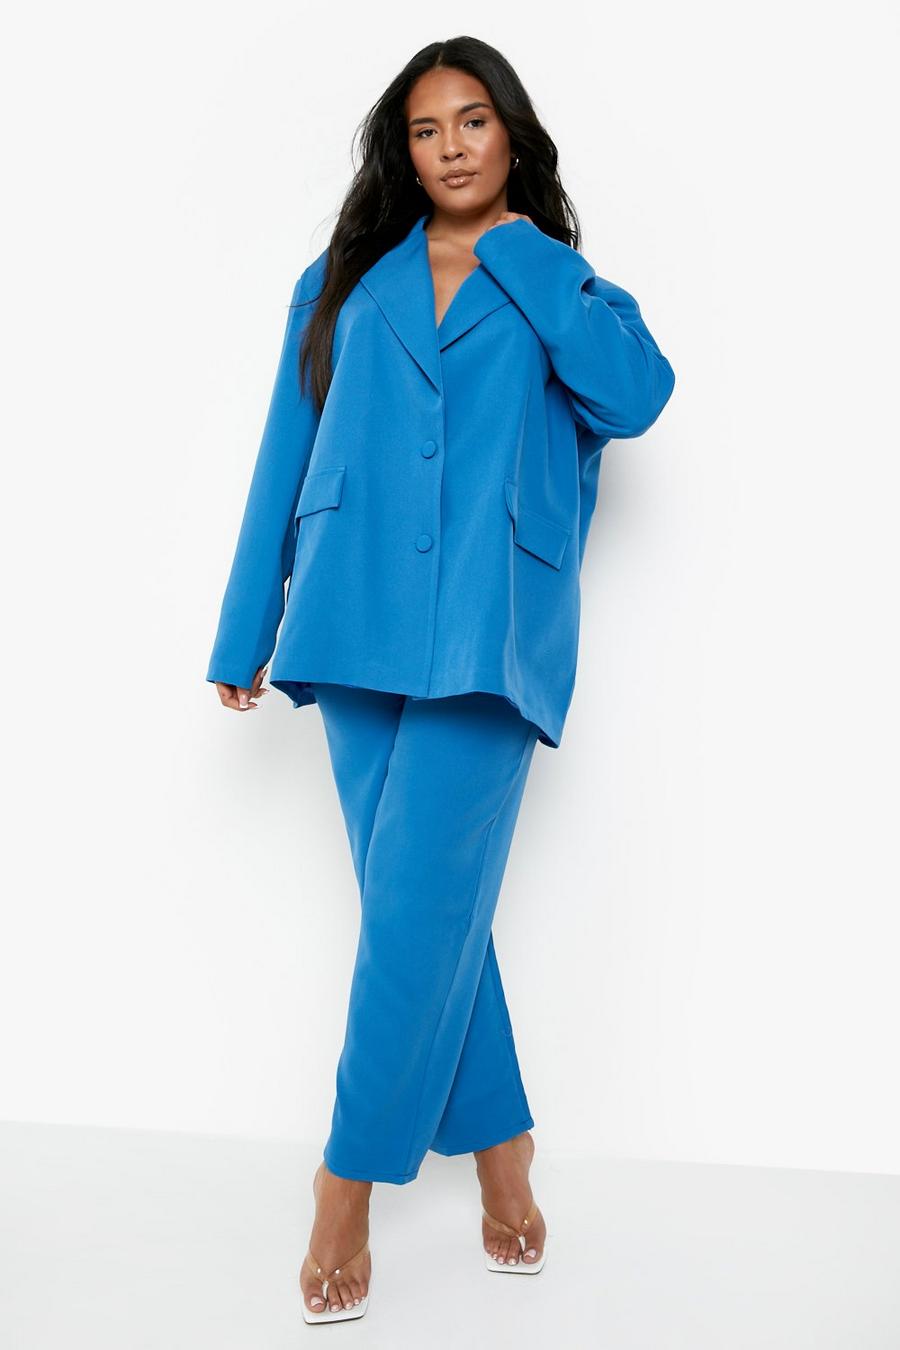 קובלט azzurro חליפת סופר סקיני עם דשים כפולים, מידות גדולות